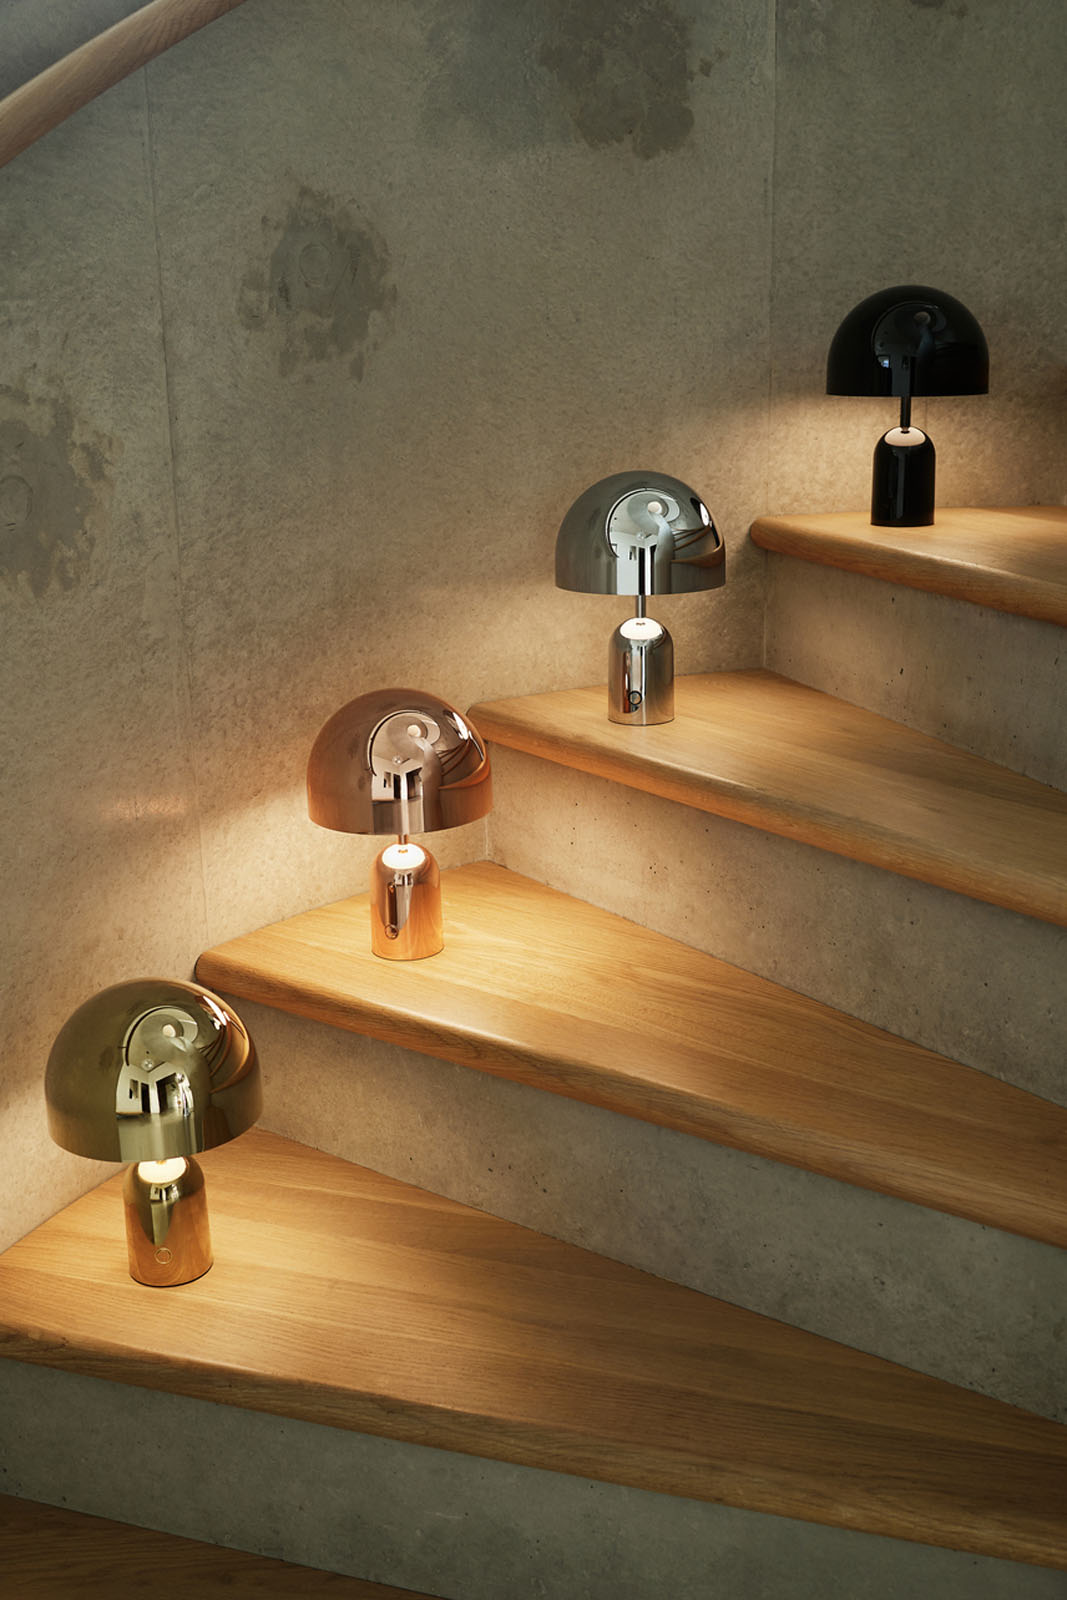 Bell-lamper i gull, kobber, sølv og svart finish, utstilt på trapp.